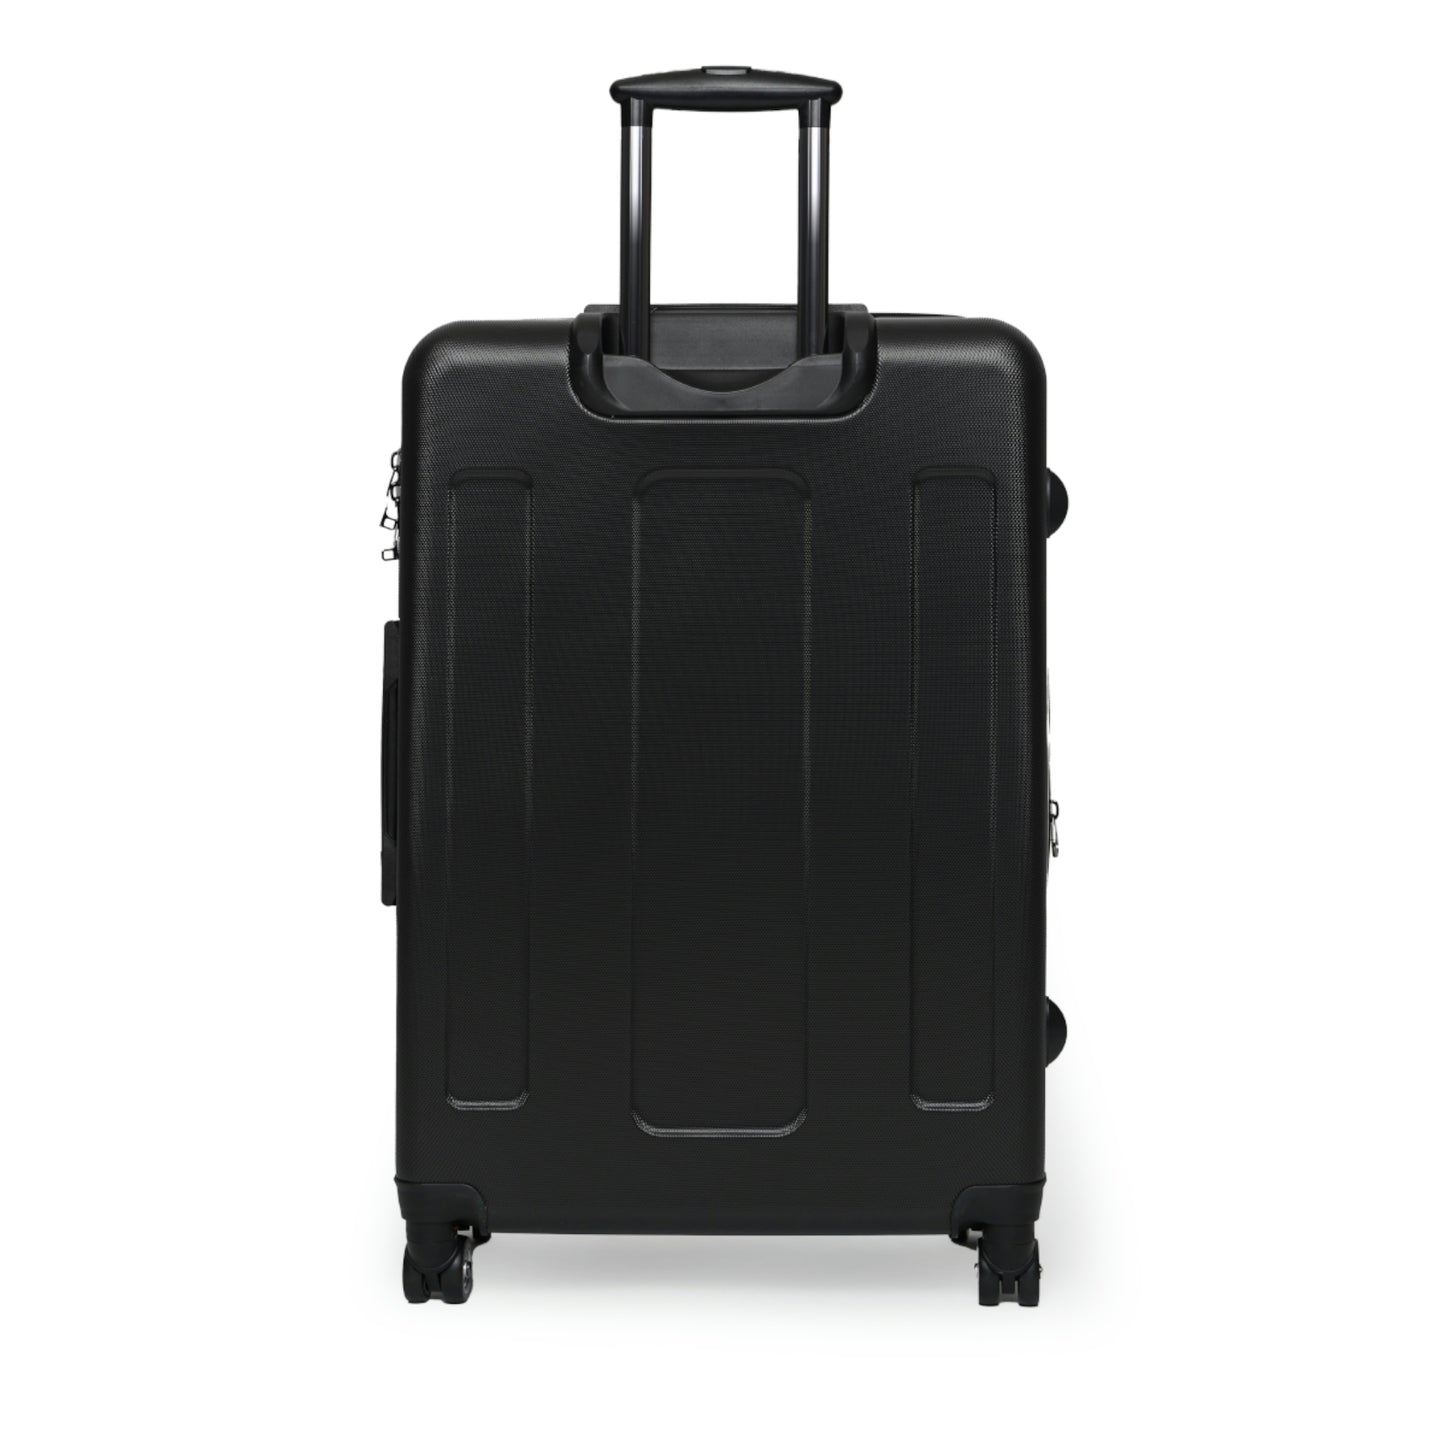 Women's Tulip Print Luggage / Custom Wheeled Suitcase